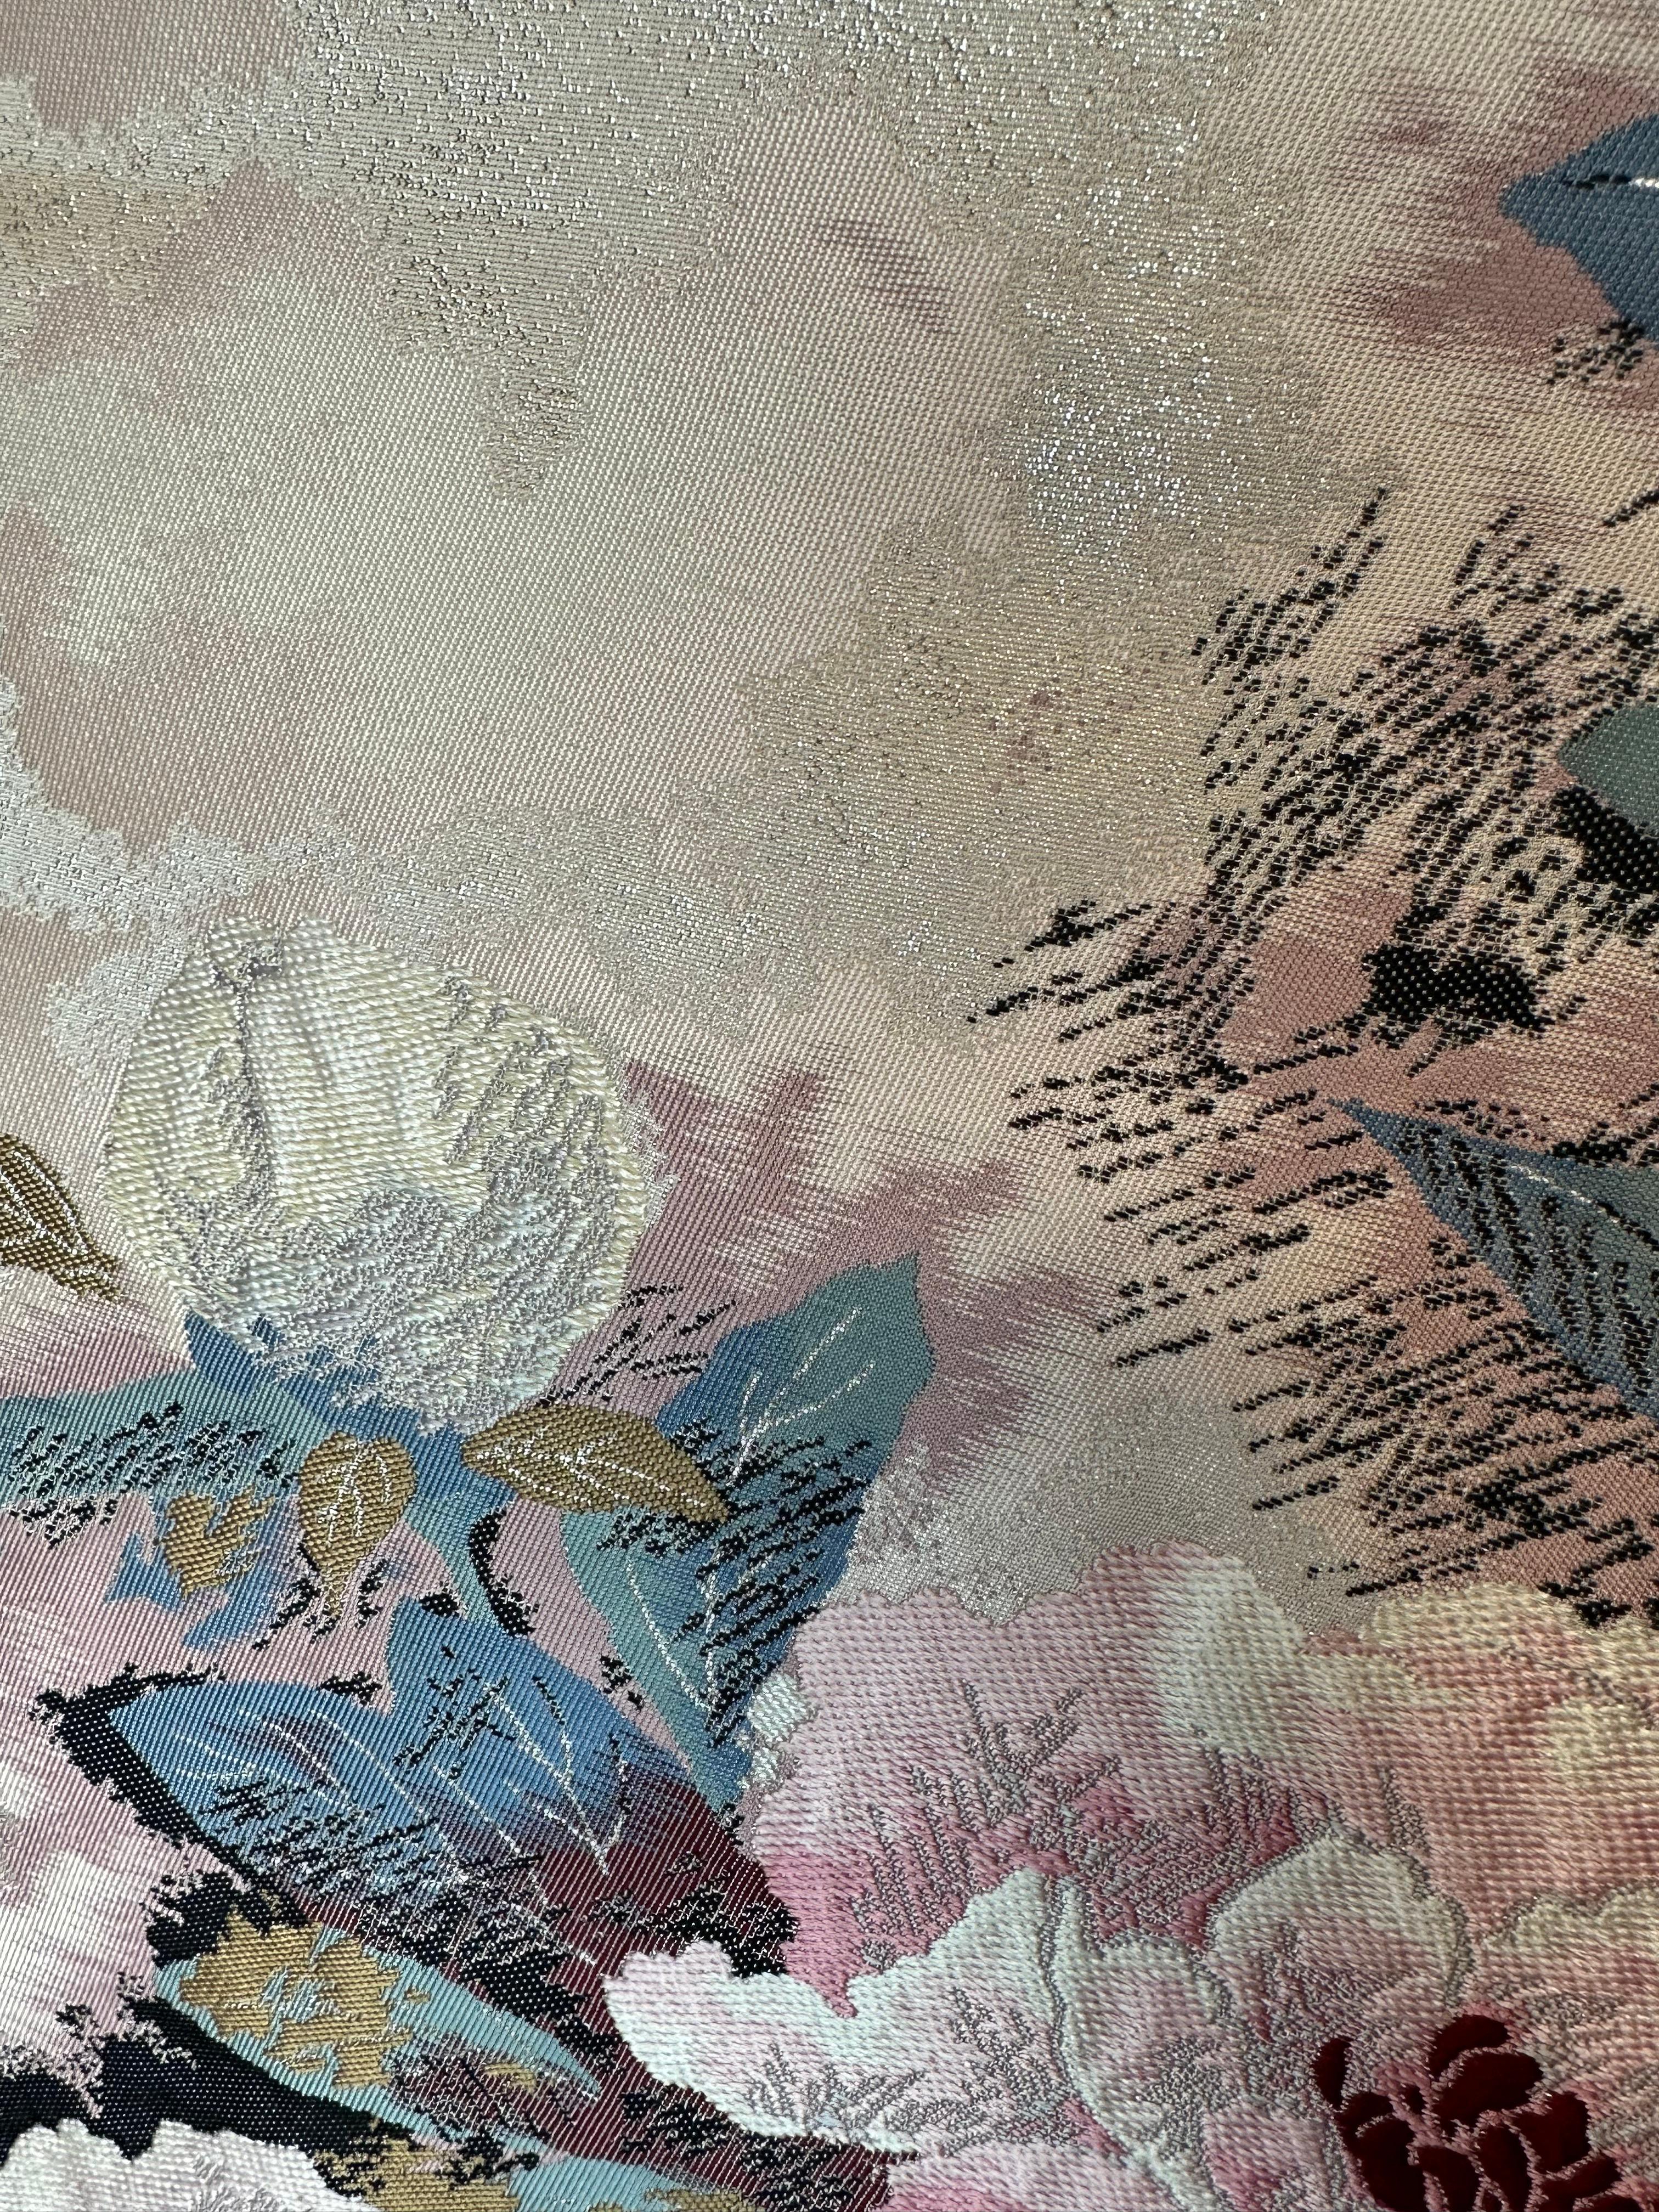 Kimono Tapestry “Prosperous Blossom” , Japanese Art, Japanese Hanging Scroll For Sale 4